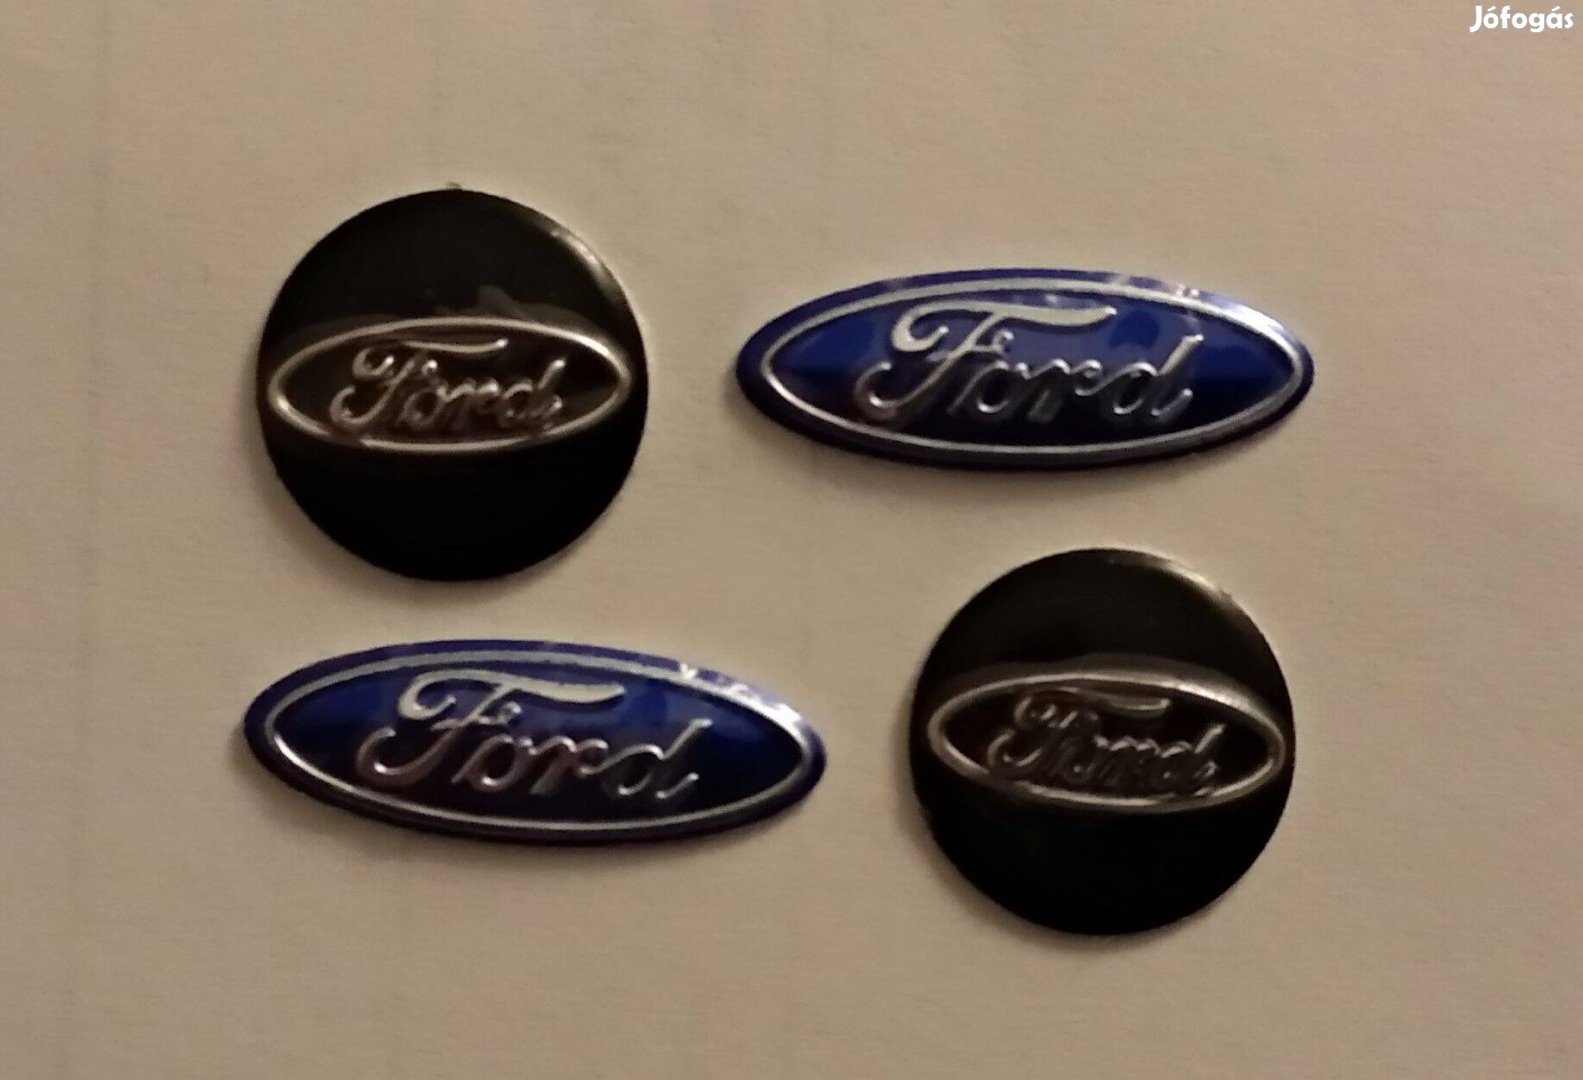 Ford indítókulcs (autó kulcs) embléma 18, 21 ill. 14 mm-es